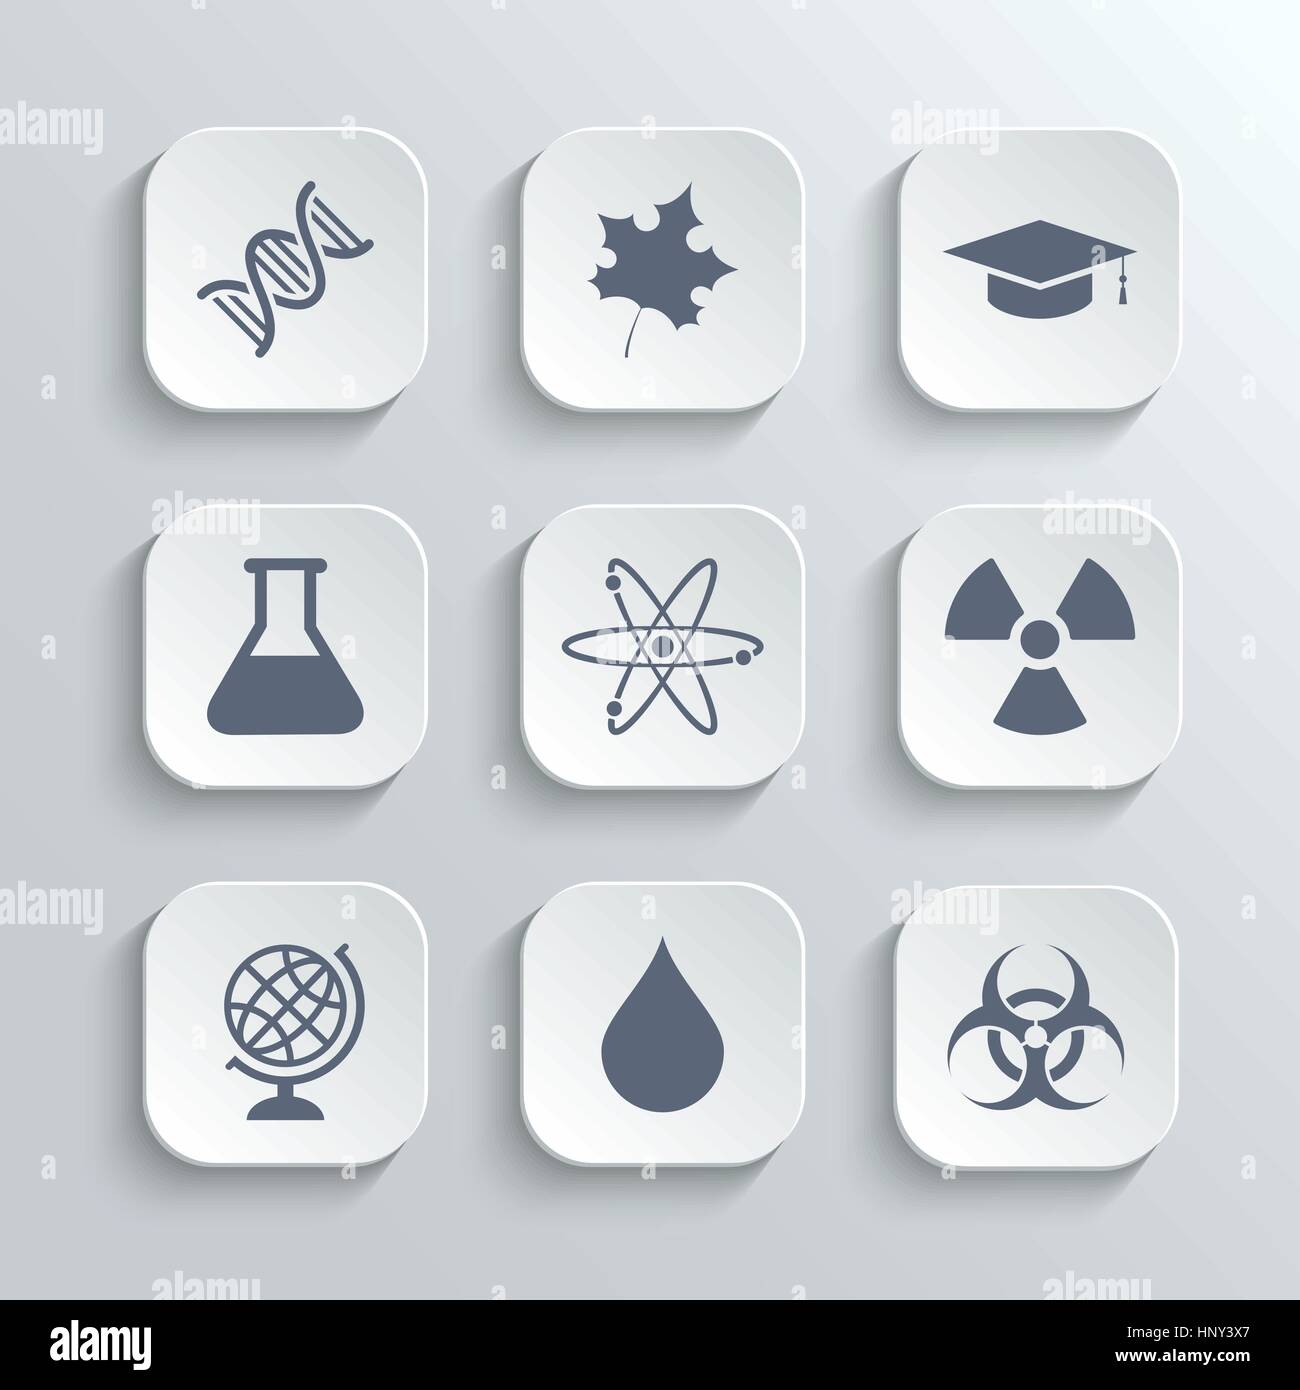 Wissenschaft-Icons set - Vektor weiße app-Buttons mit DNA-Ahorn Blatt Graduierung GAP Atom Radioaktivität Bio Hazard Labor Glühbirne Globus Tropfen Wasser Stock Vektor